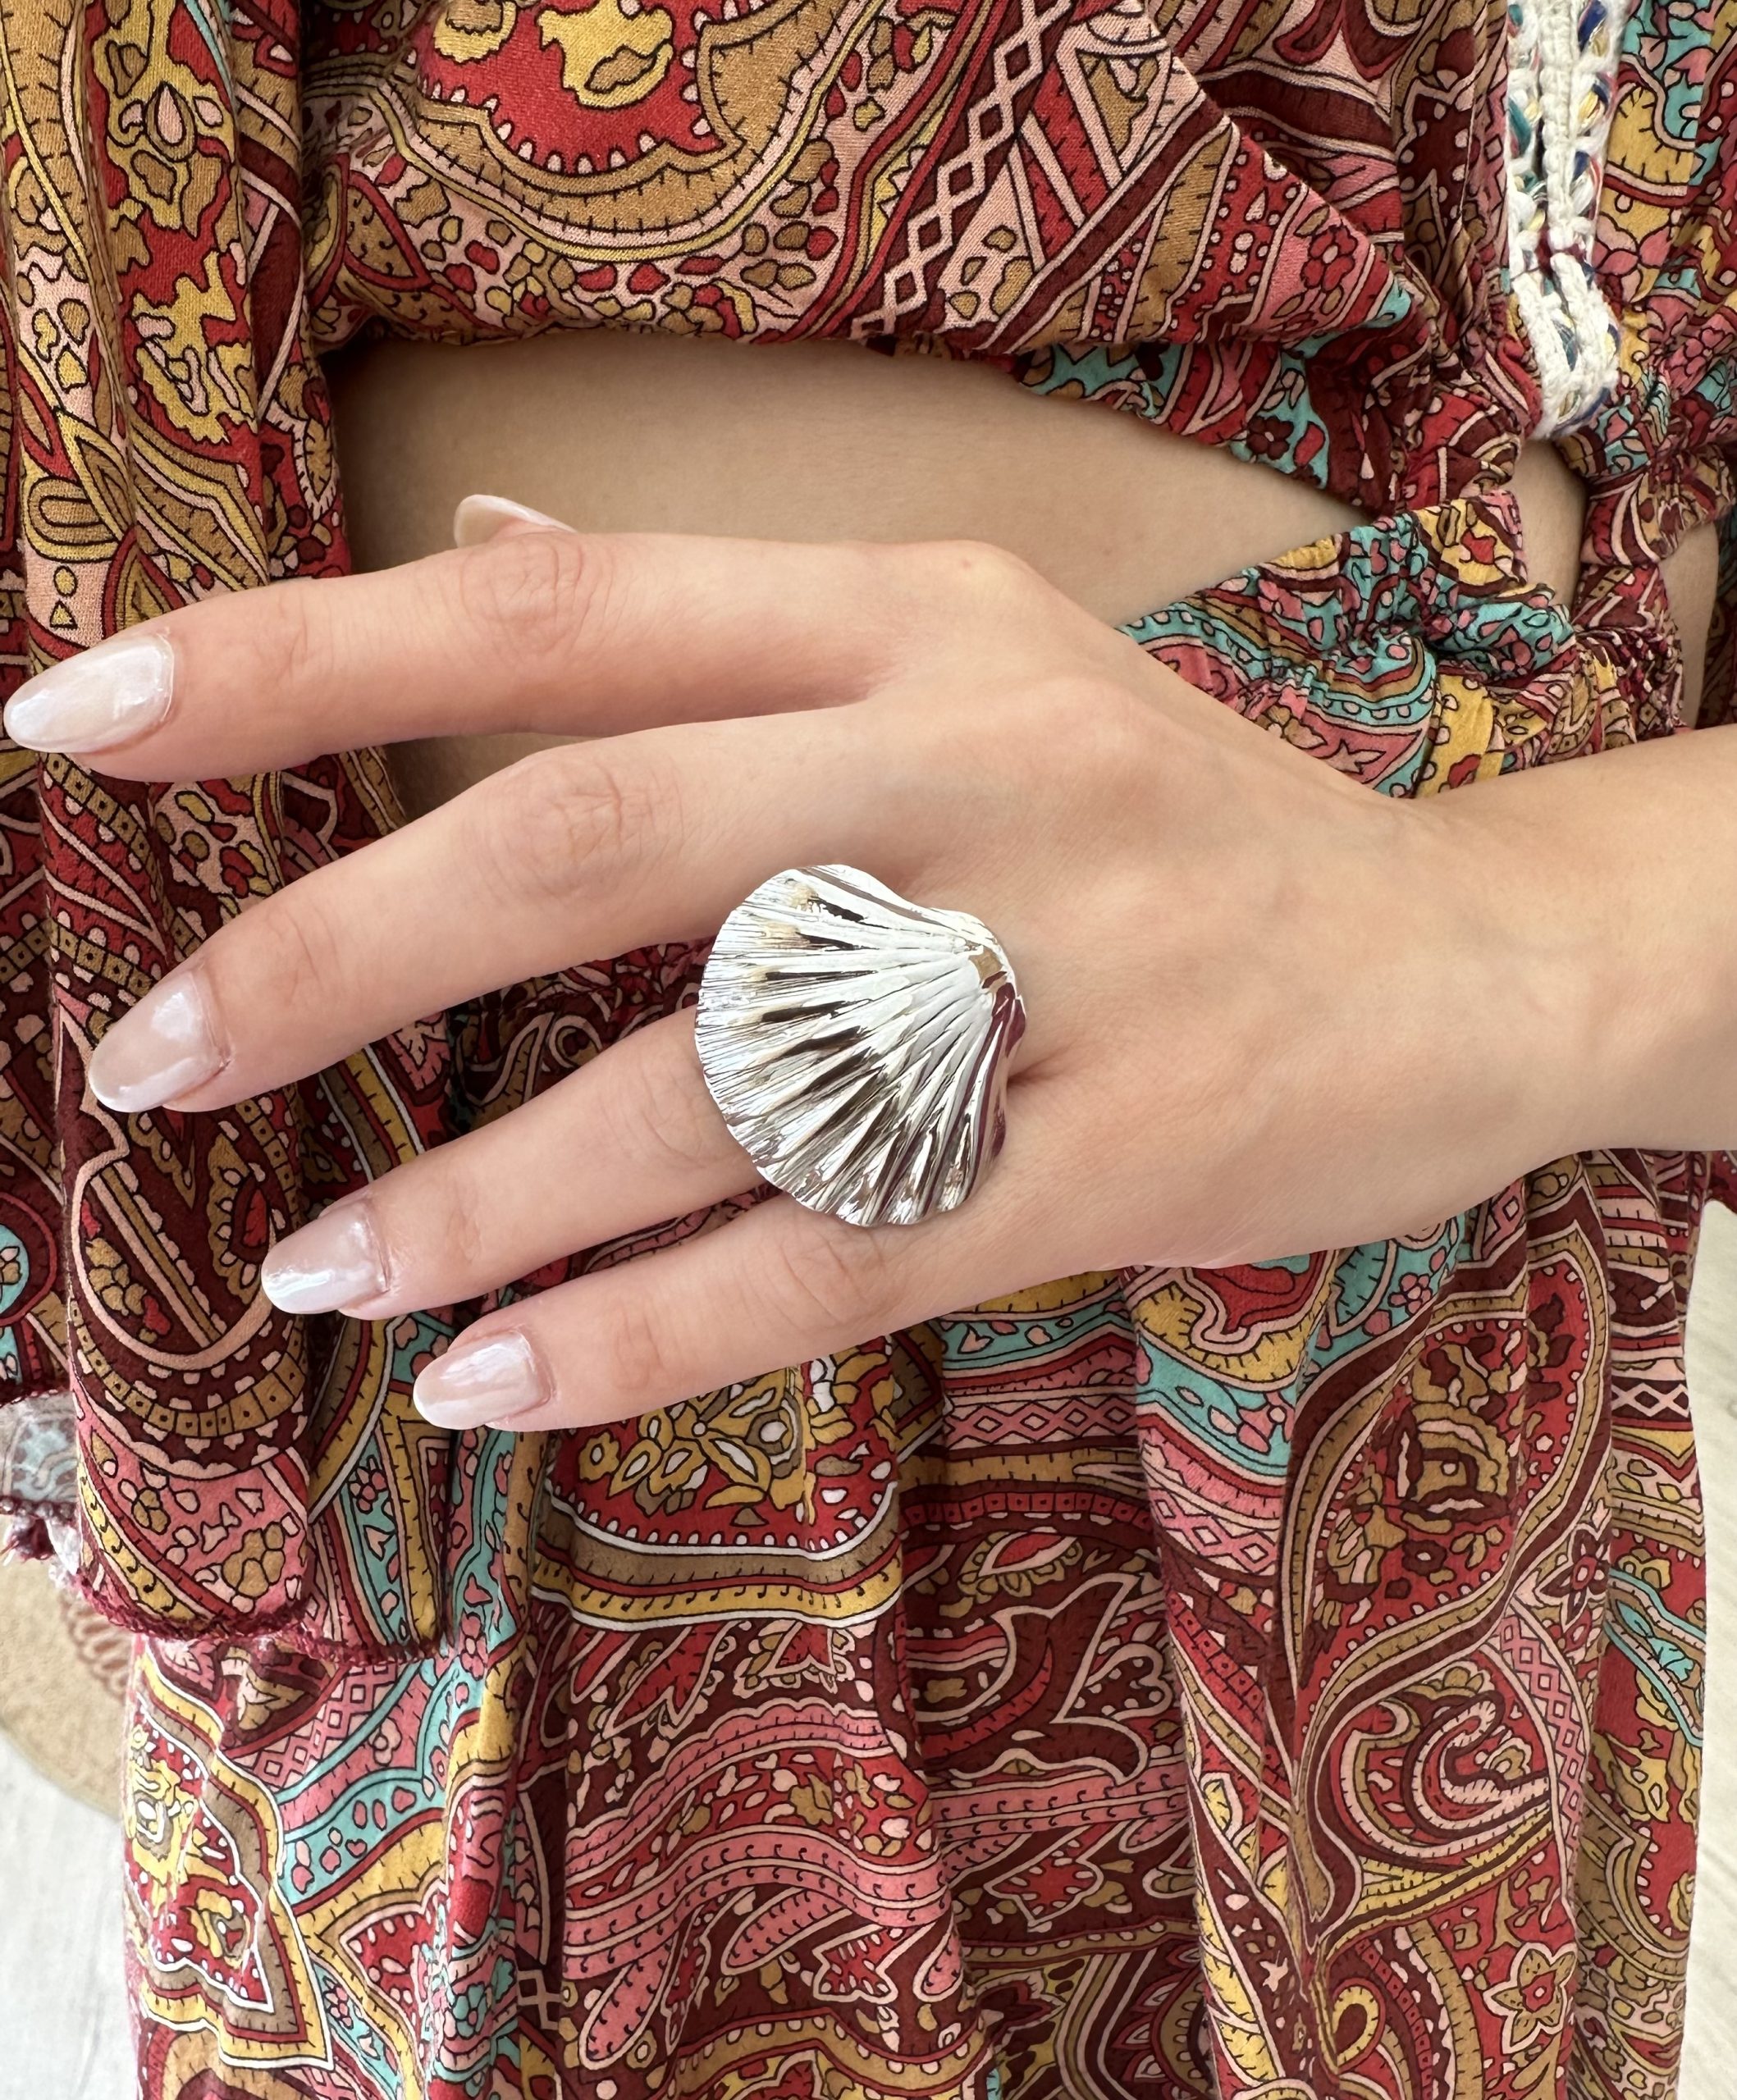 Ατσάλινο δαχτυλίδι σε ασημί χρώμα σε σχήμα αχιβάδας .Ιδανικό δαχτυλίδι που κοσμεί μοναδικά τα χέρια σου τους καλοκαιρινούς μήνες . Βρες το στο www.cprcollection.gr